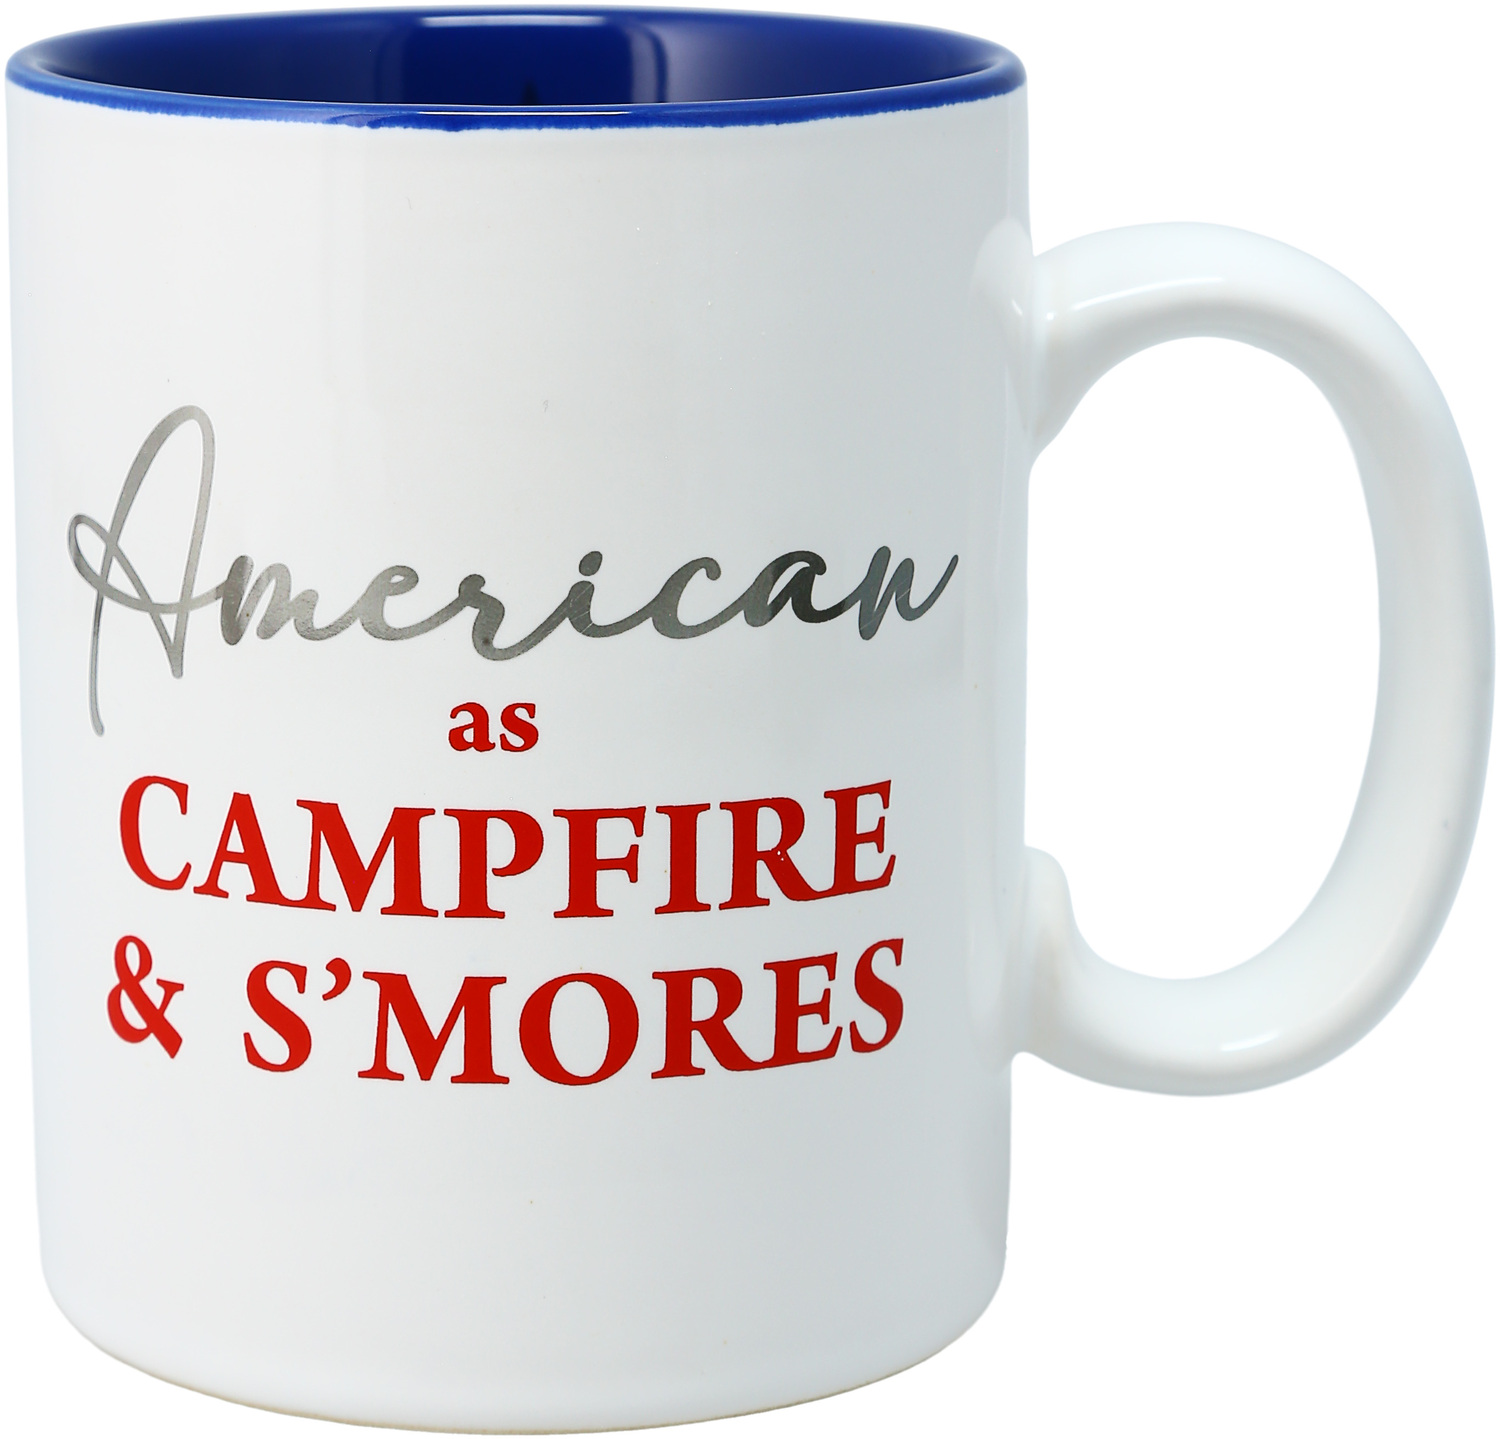 Campfire by Red, White, & Blue Crew - Campfire - 18 oz Mug